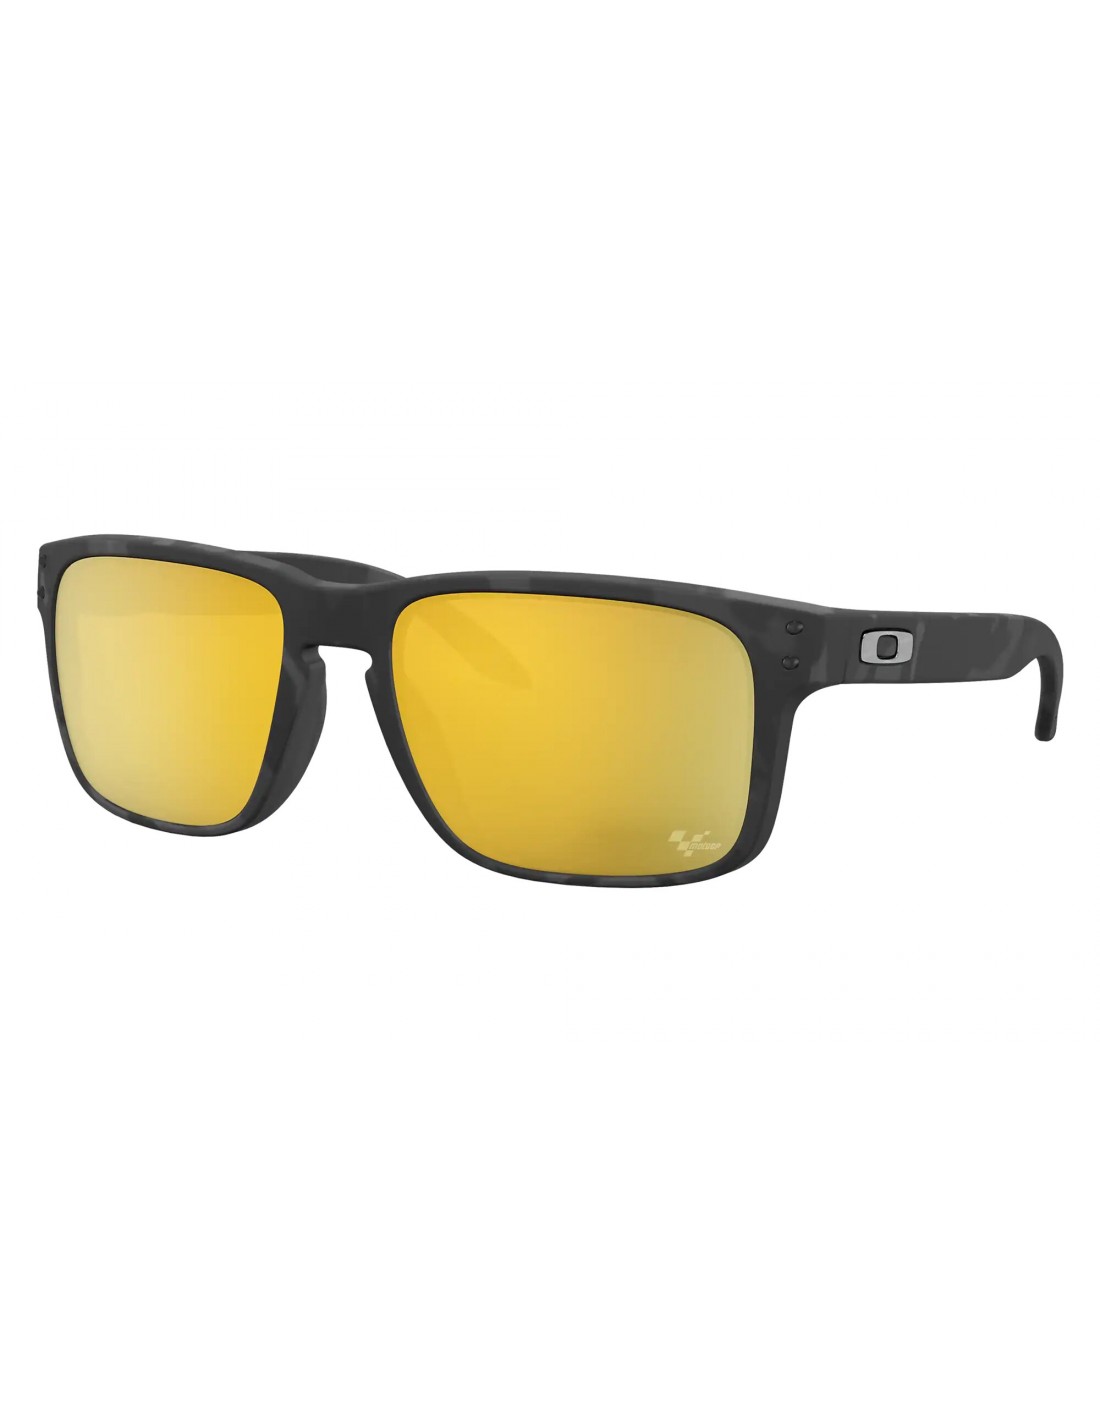 Oakley Sonnenbrille - HolbrookGP Collection - Matte Black Tortoise - Prizm 24k Polarized Brillenfassung - Sportbrillen, von Oakley